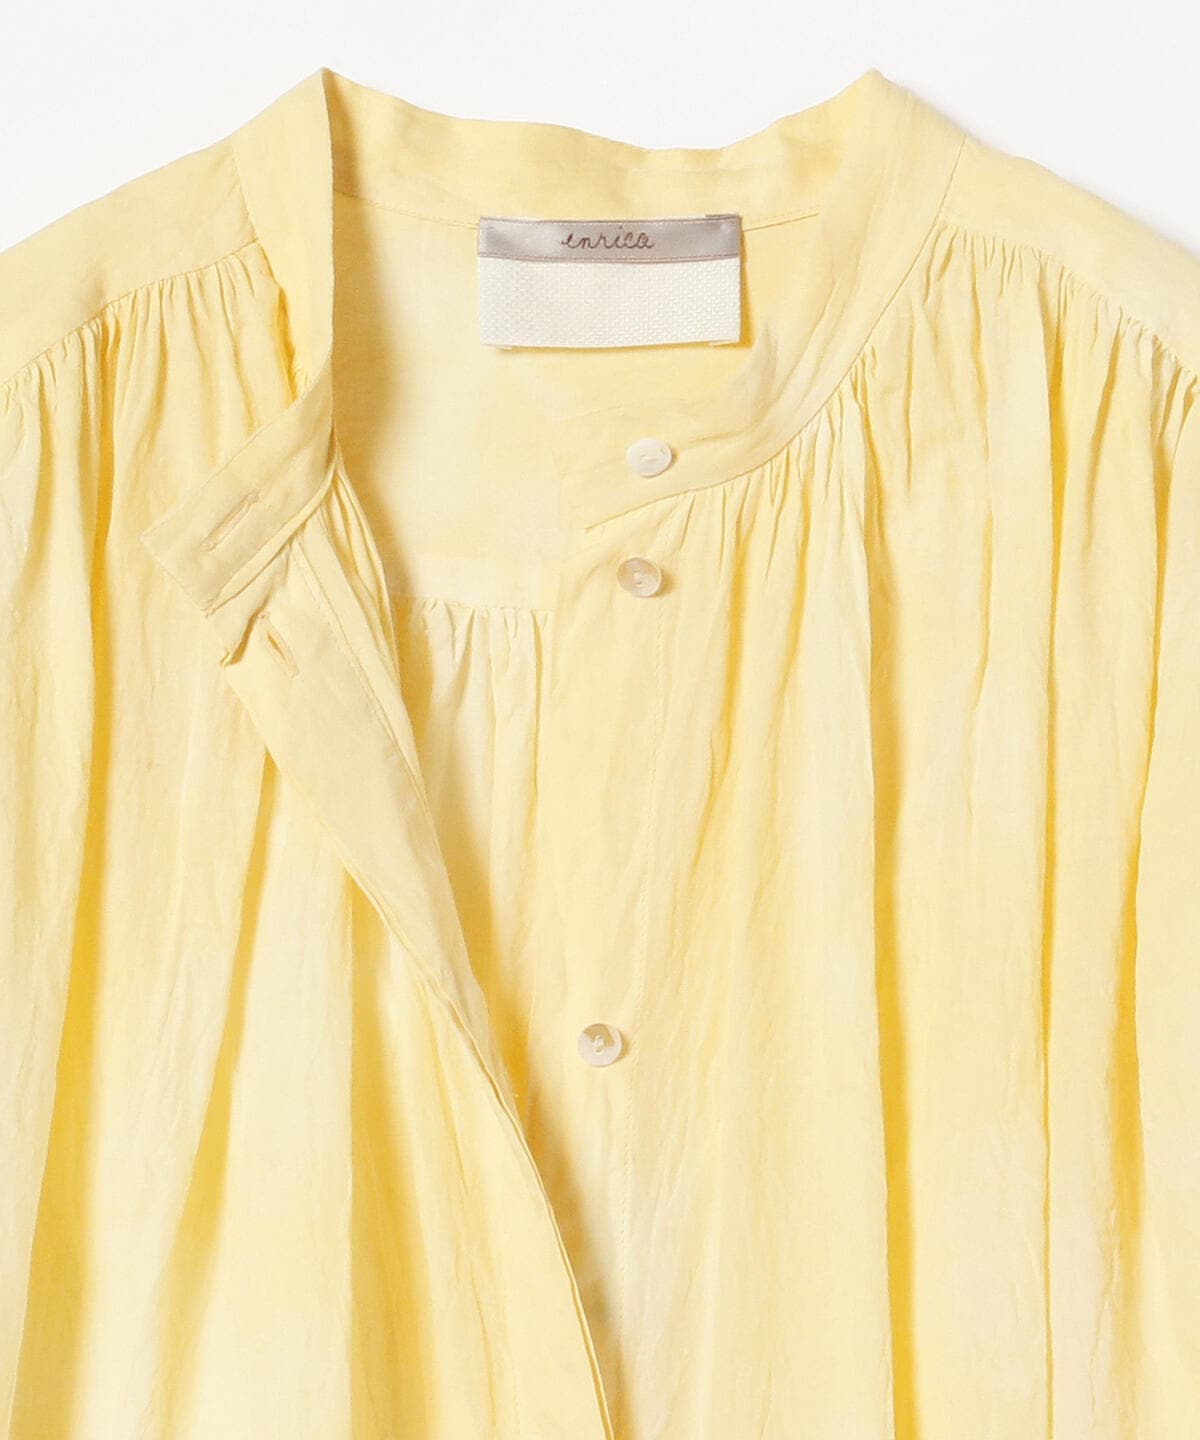 新規購入 enrica コットンオーガンジー 2way blouse WHITE